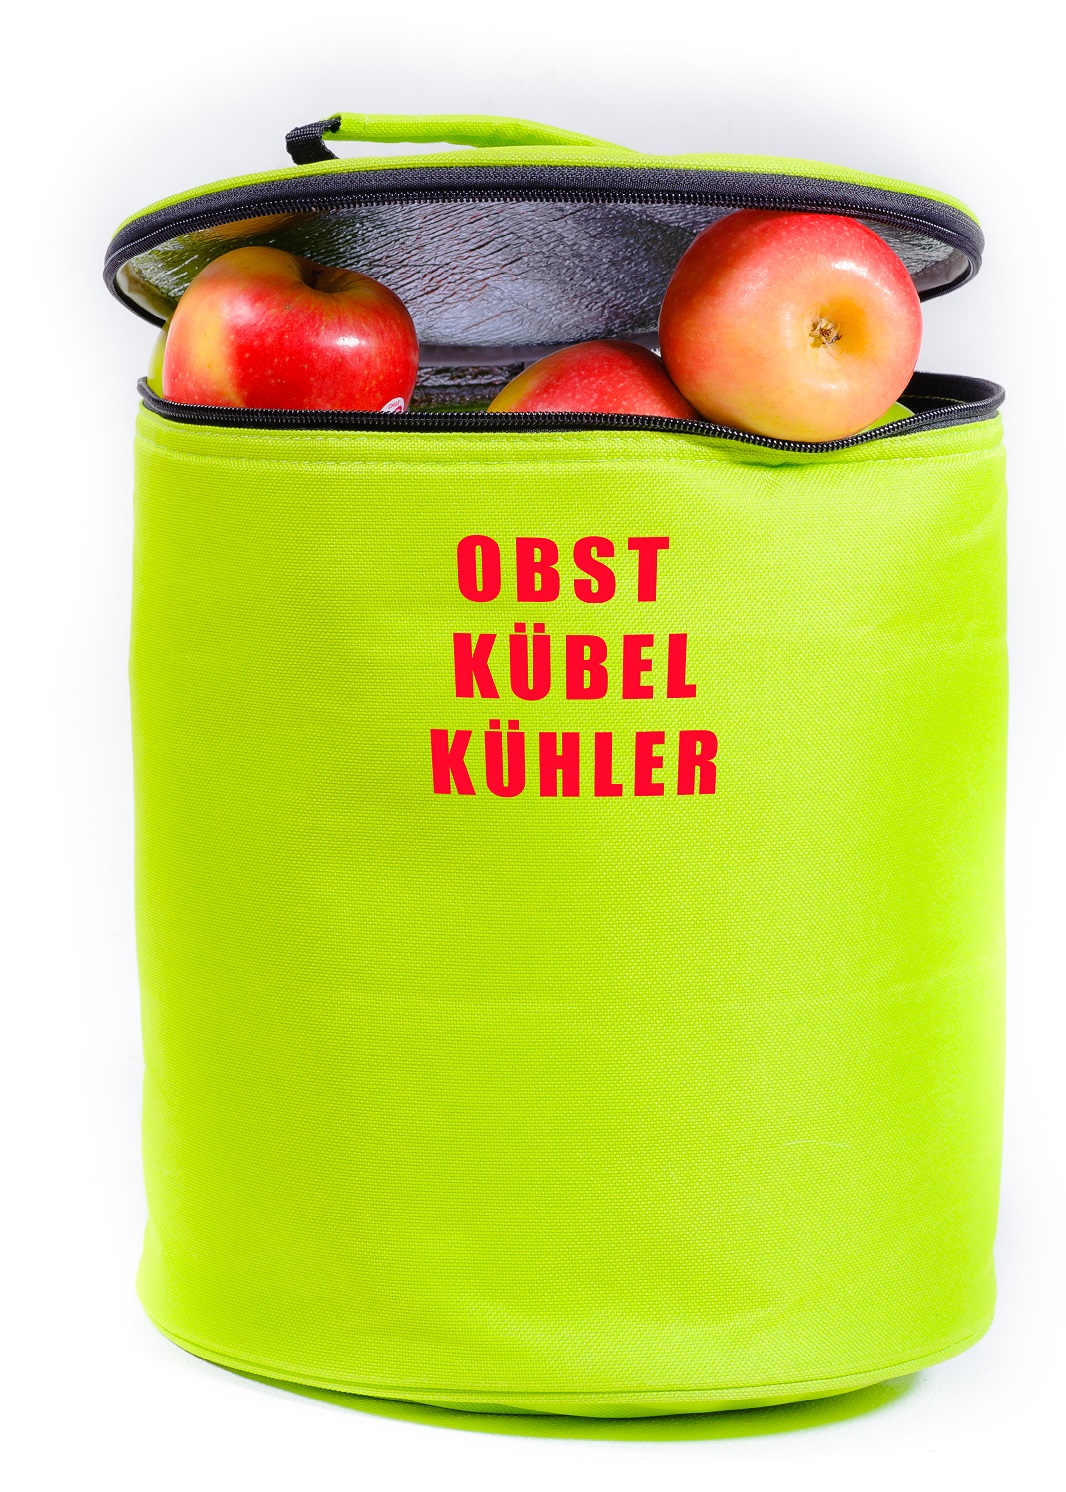 Fruit cooler bag